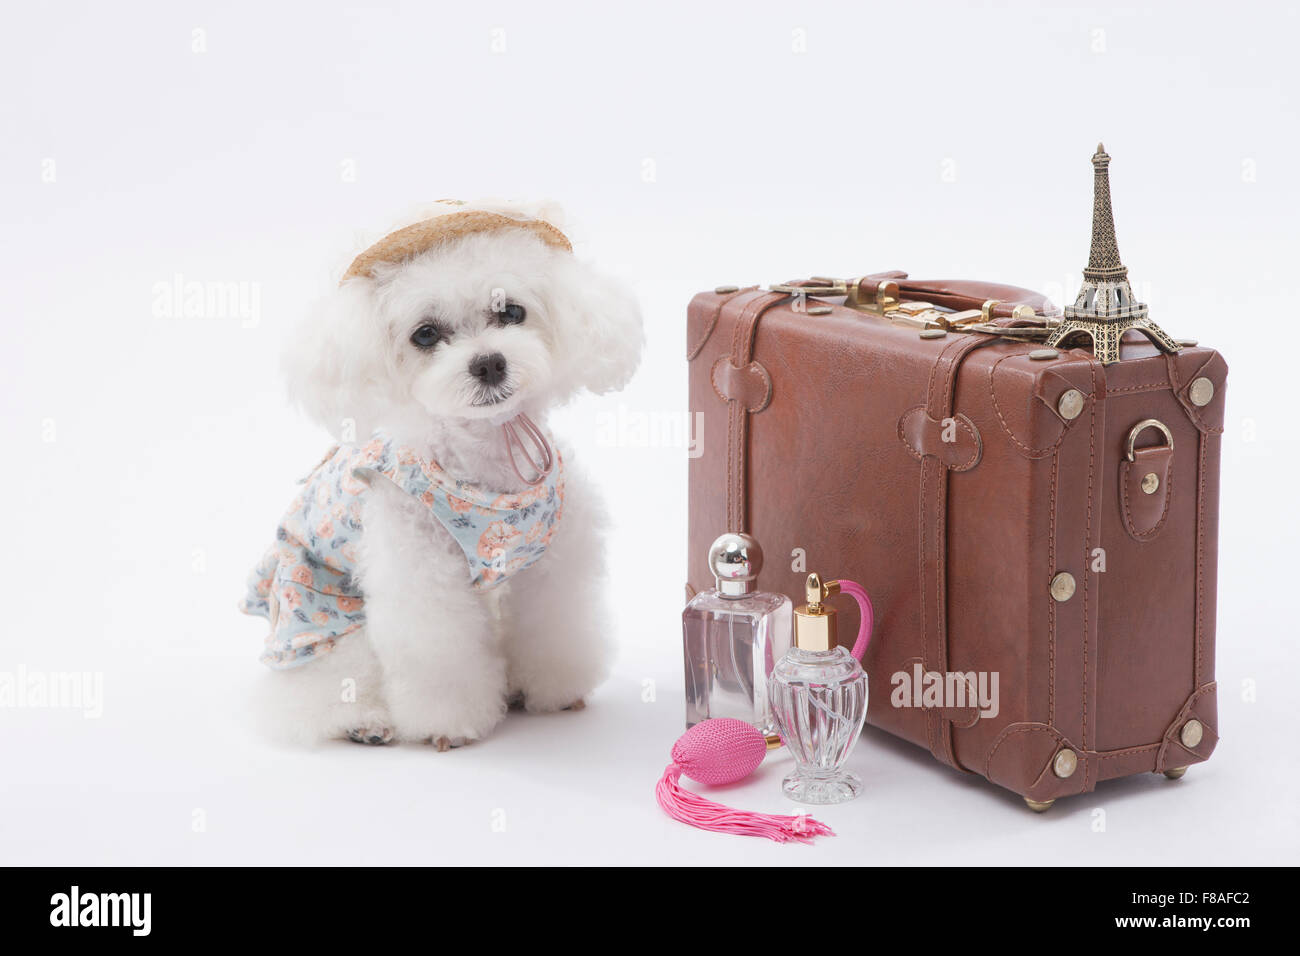 Bichon frise in stile viaggiatore seduto accanto ad una valigia e profumi Foto Stock